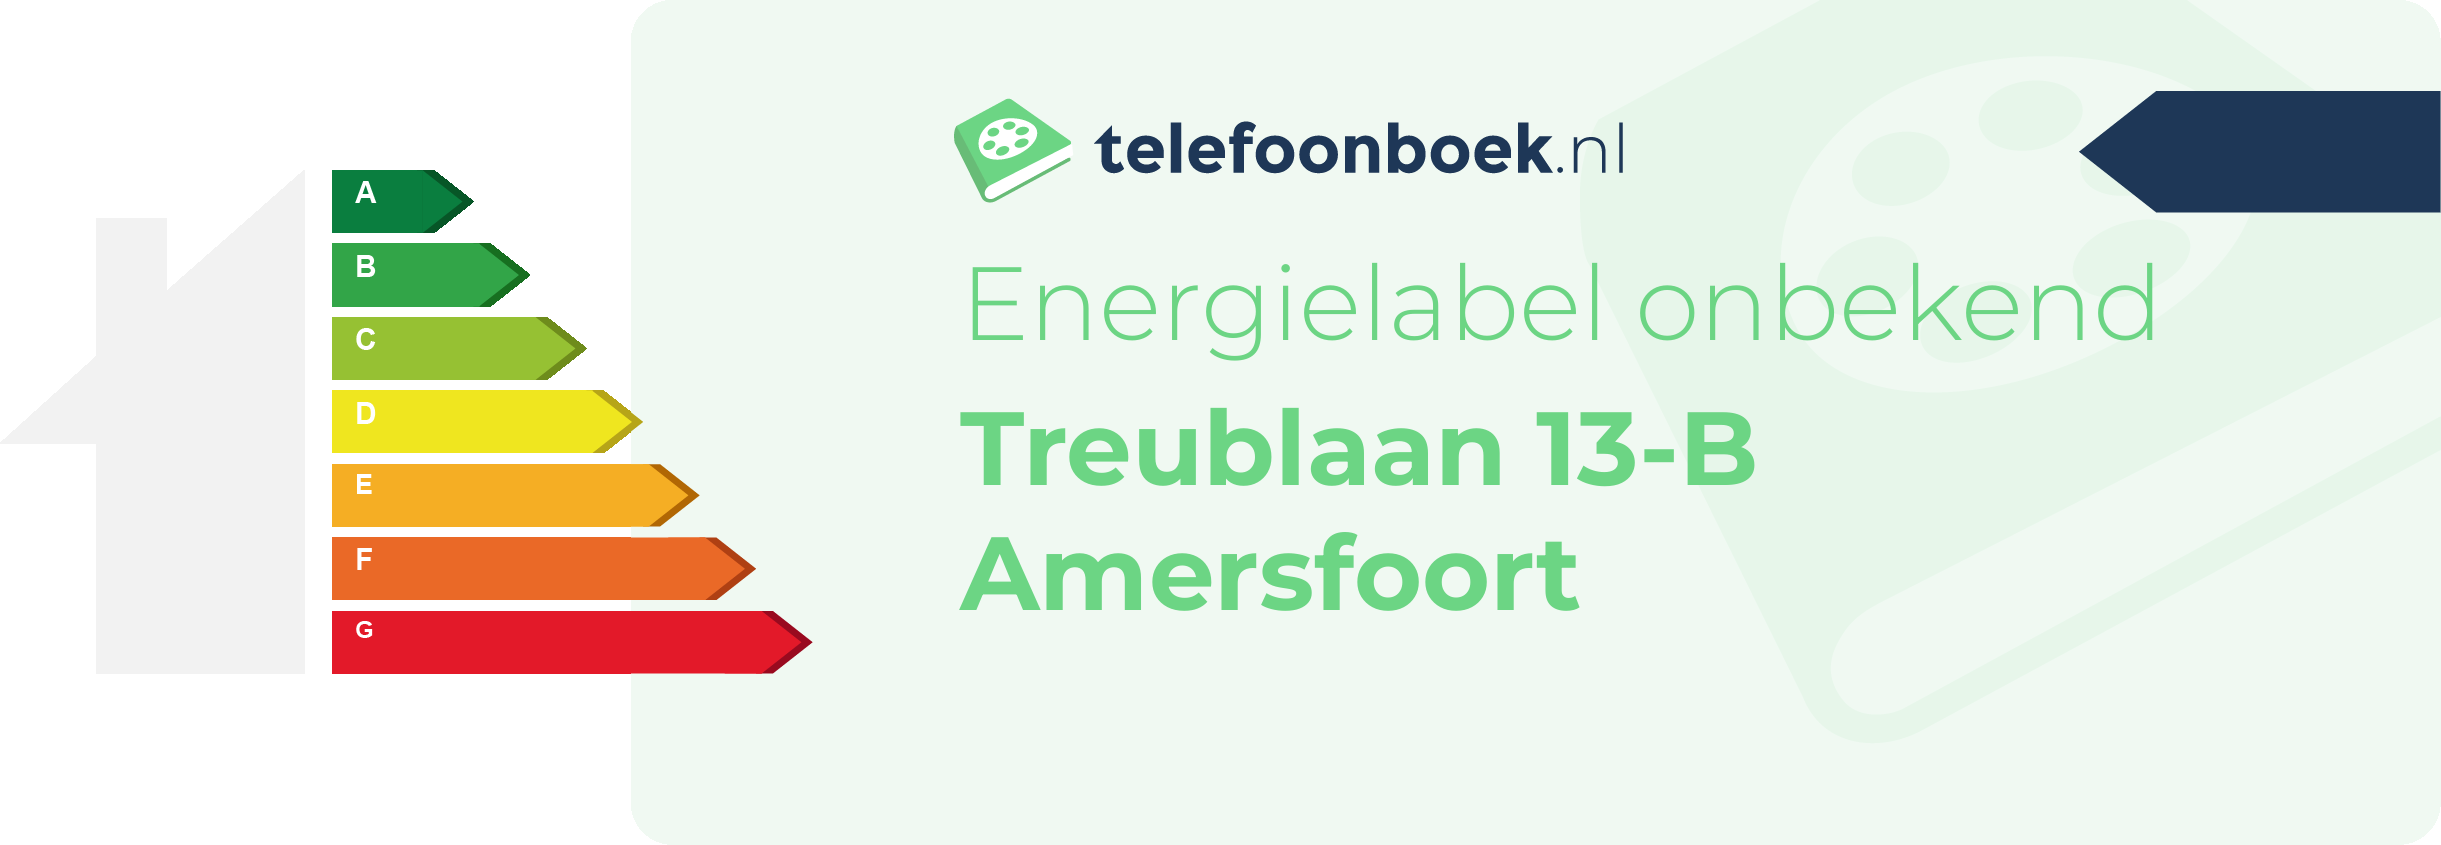 Energielabel Treublaan 13-B Amersfoort